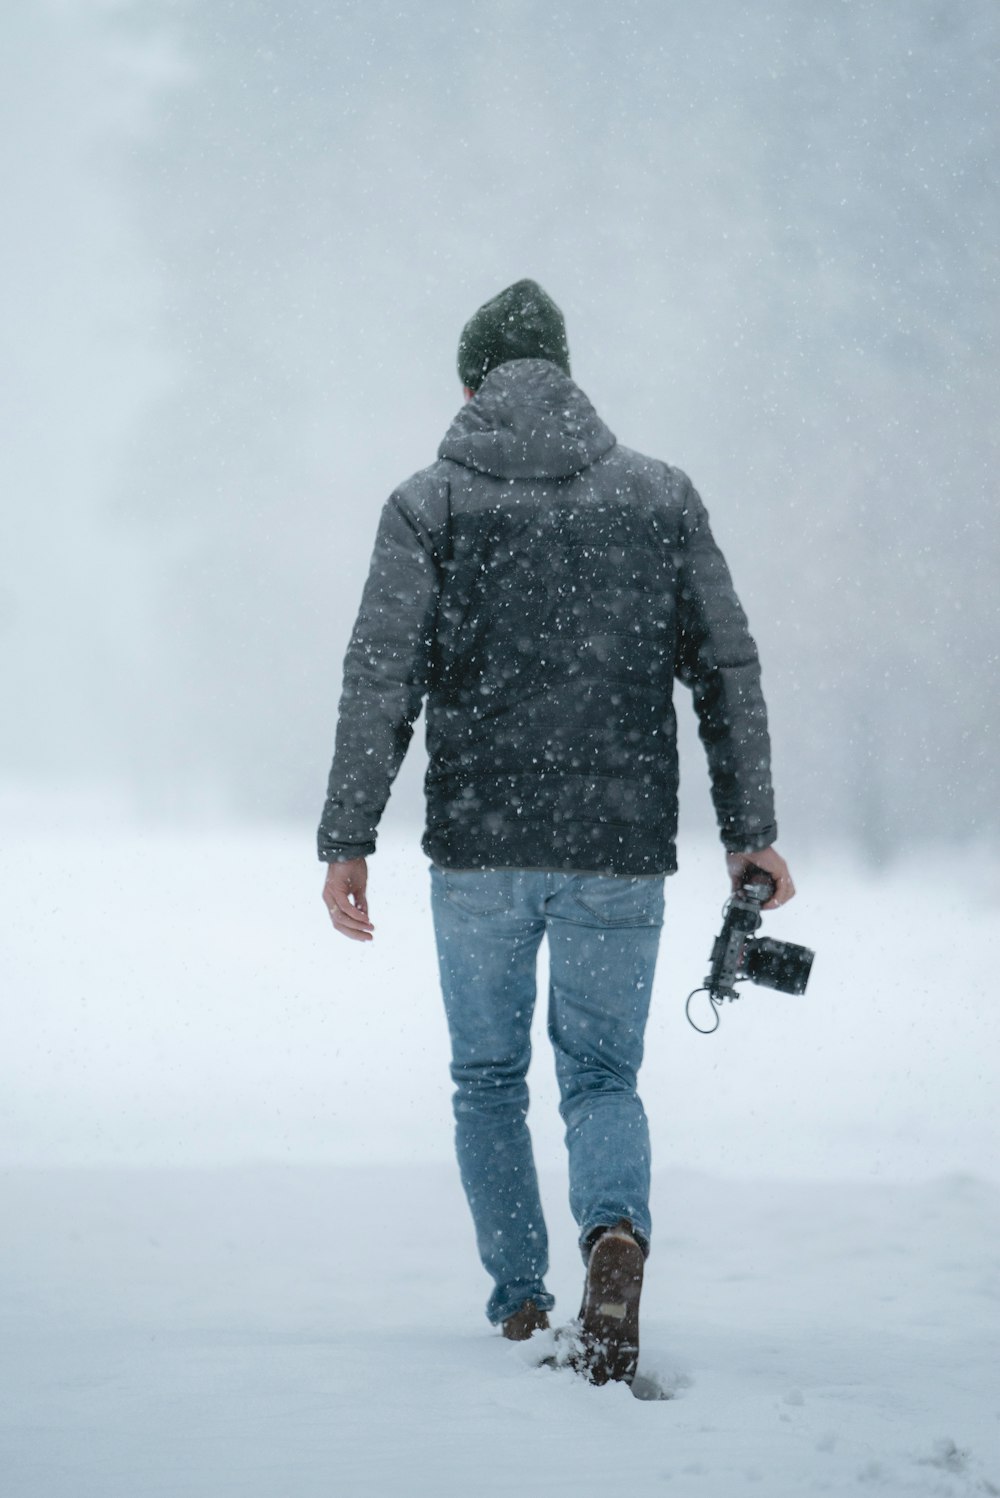 눈 위를 걷는 동안 카메라를 들고 있는 회색 재킷을 입은 남자